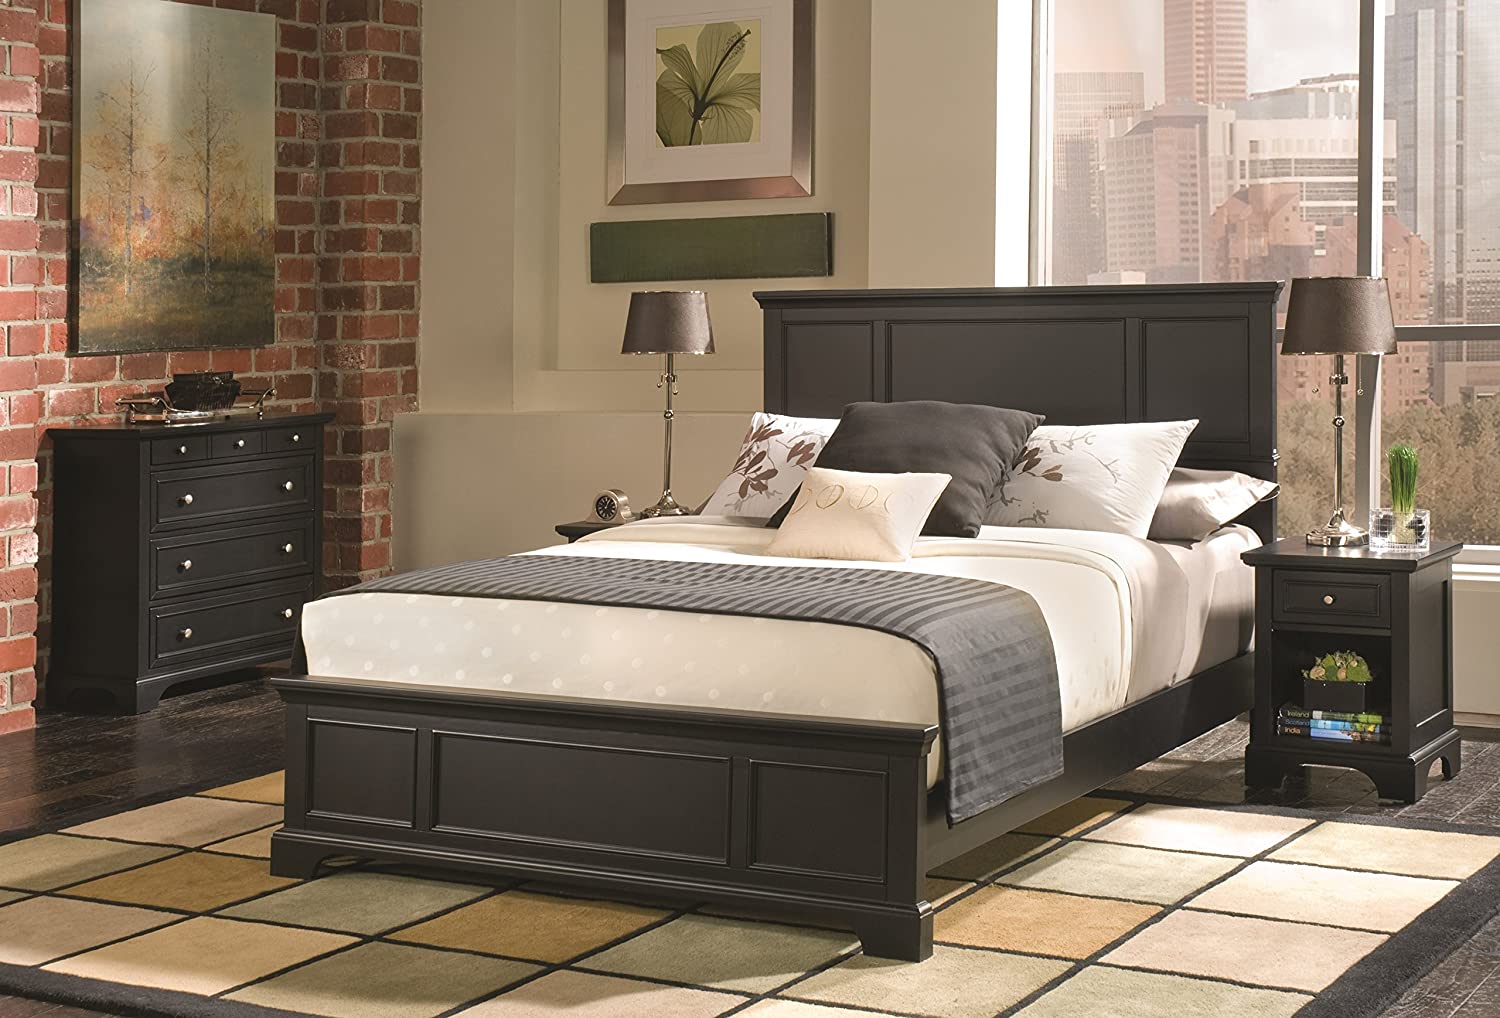 cheap bedroom furniture set under $500